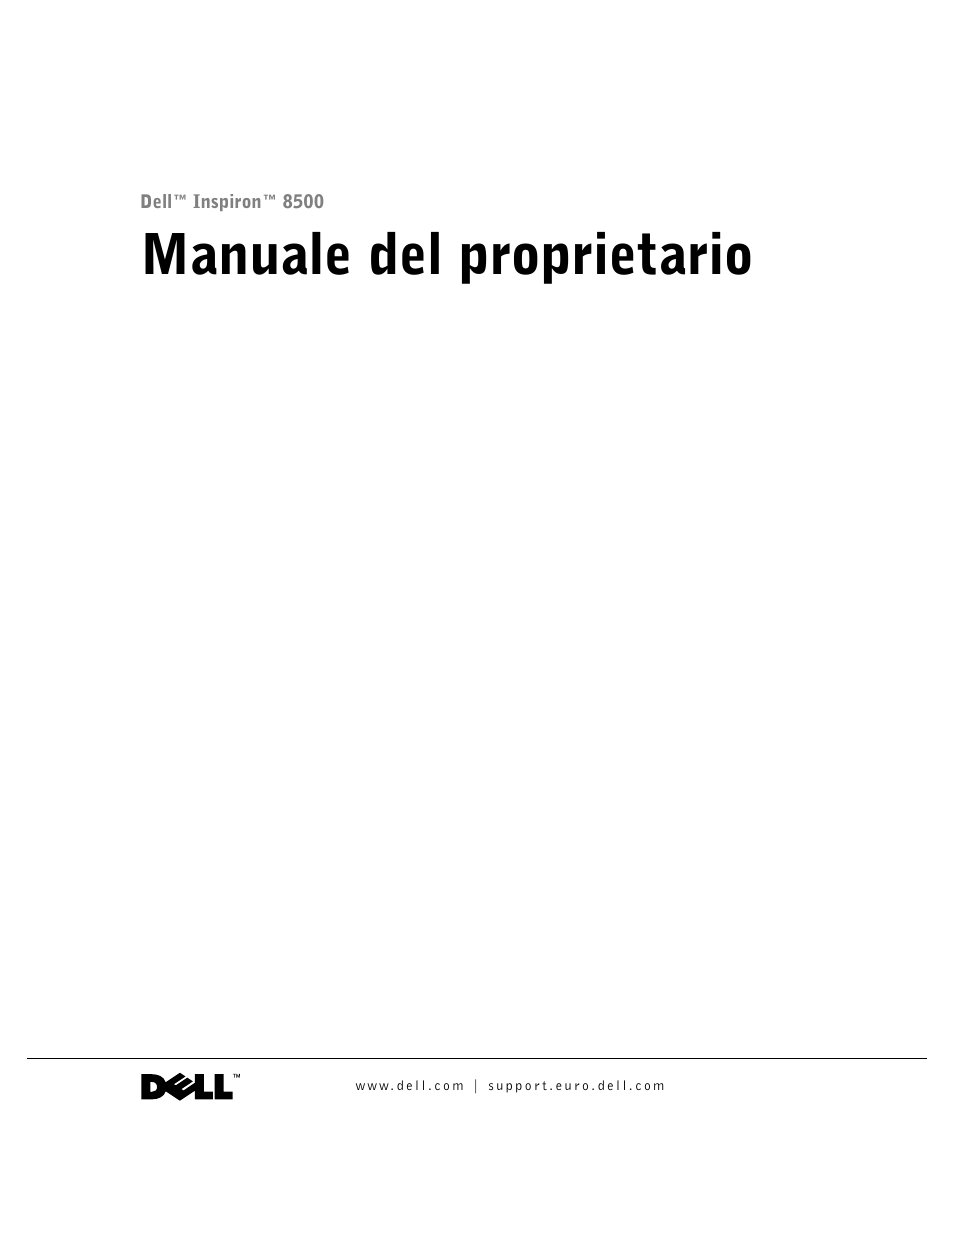 Dell Inspiron 8500 Manuale d'uso | Pagine: 168